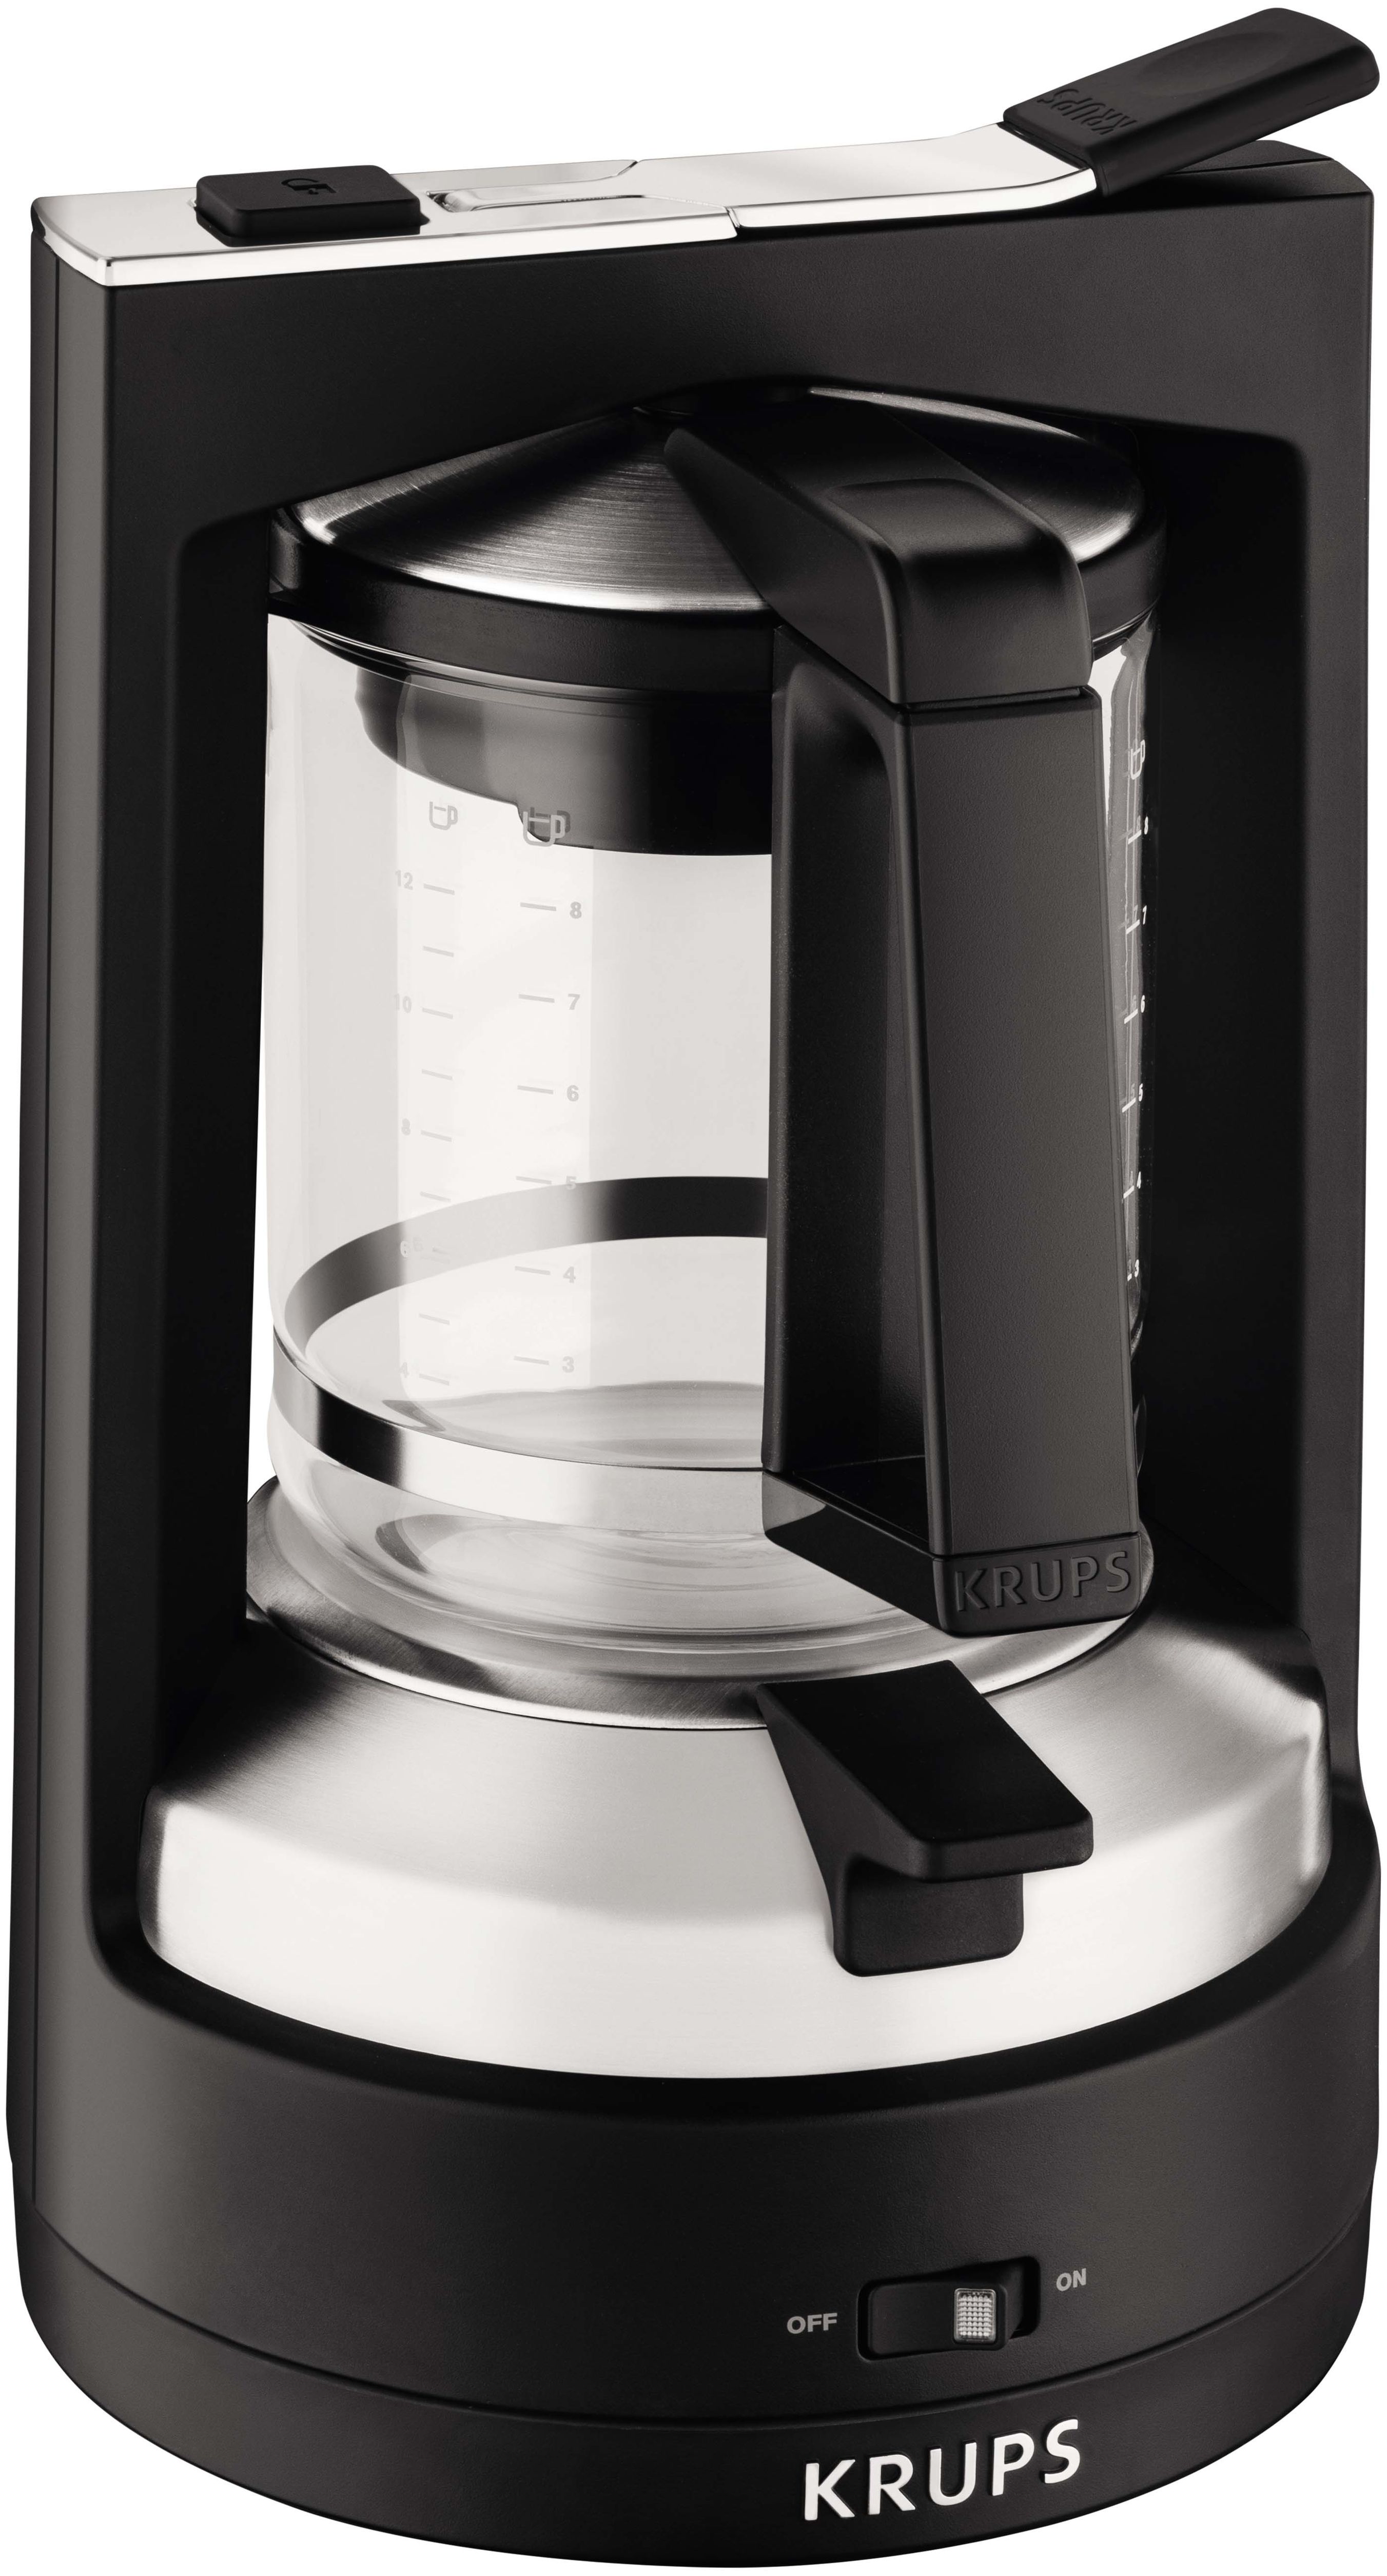 Krups Filterkaffeemaschine KM4689 (Schwarz) Technomarkt 8.2 Tassen expert Druckbrüh-Automat l 12 T von 1,2